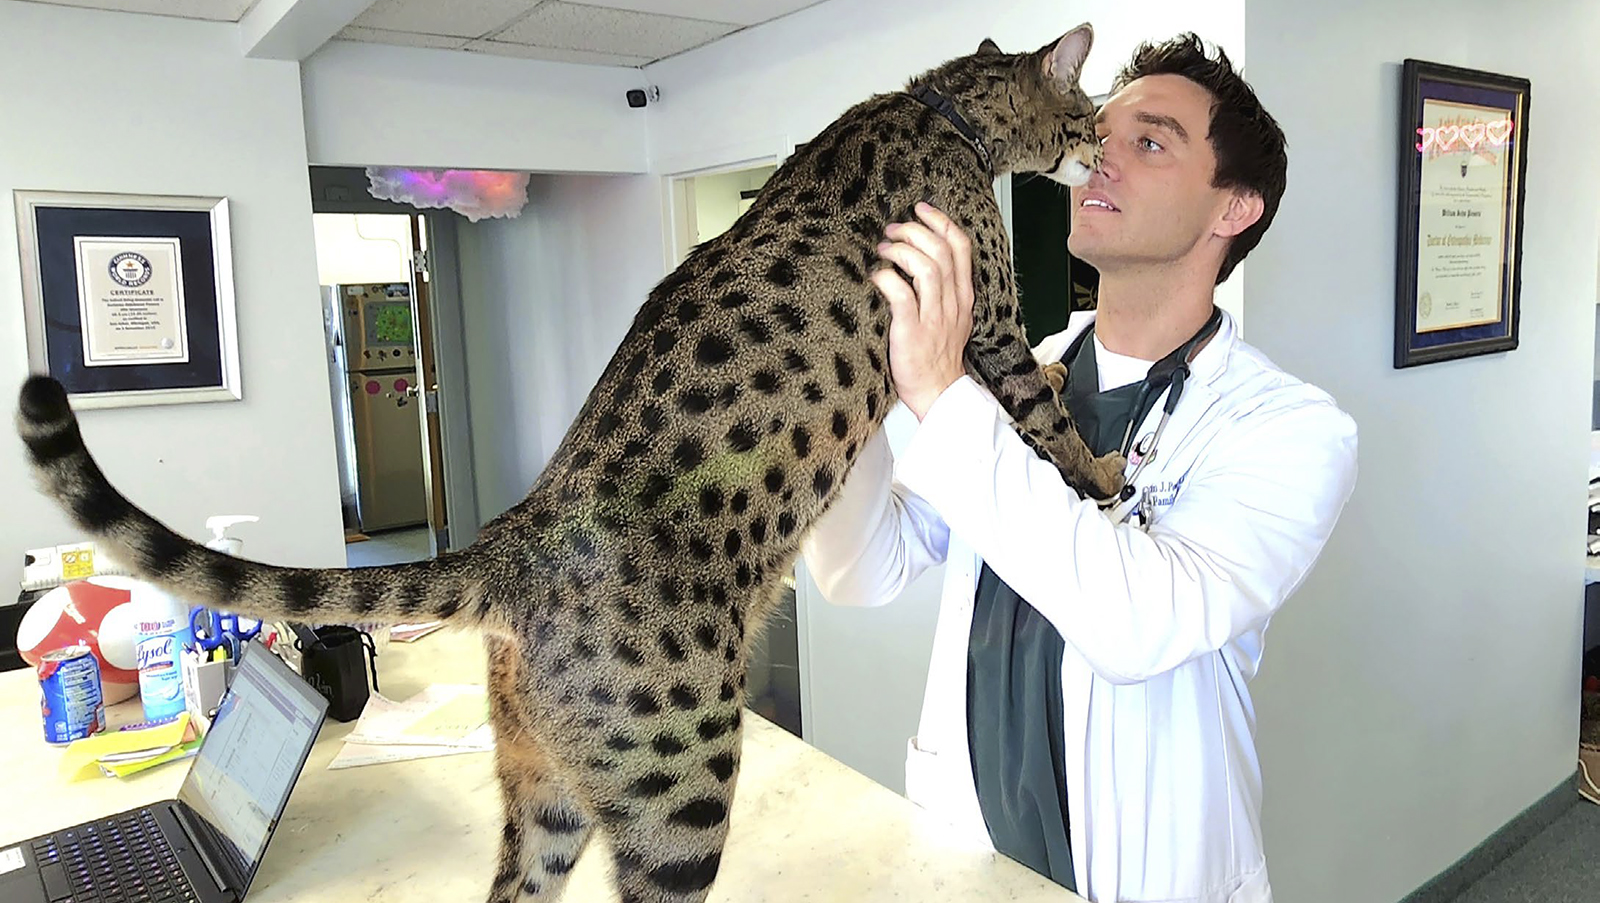 Kissa ja eläinlääkäri